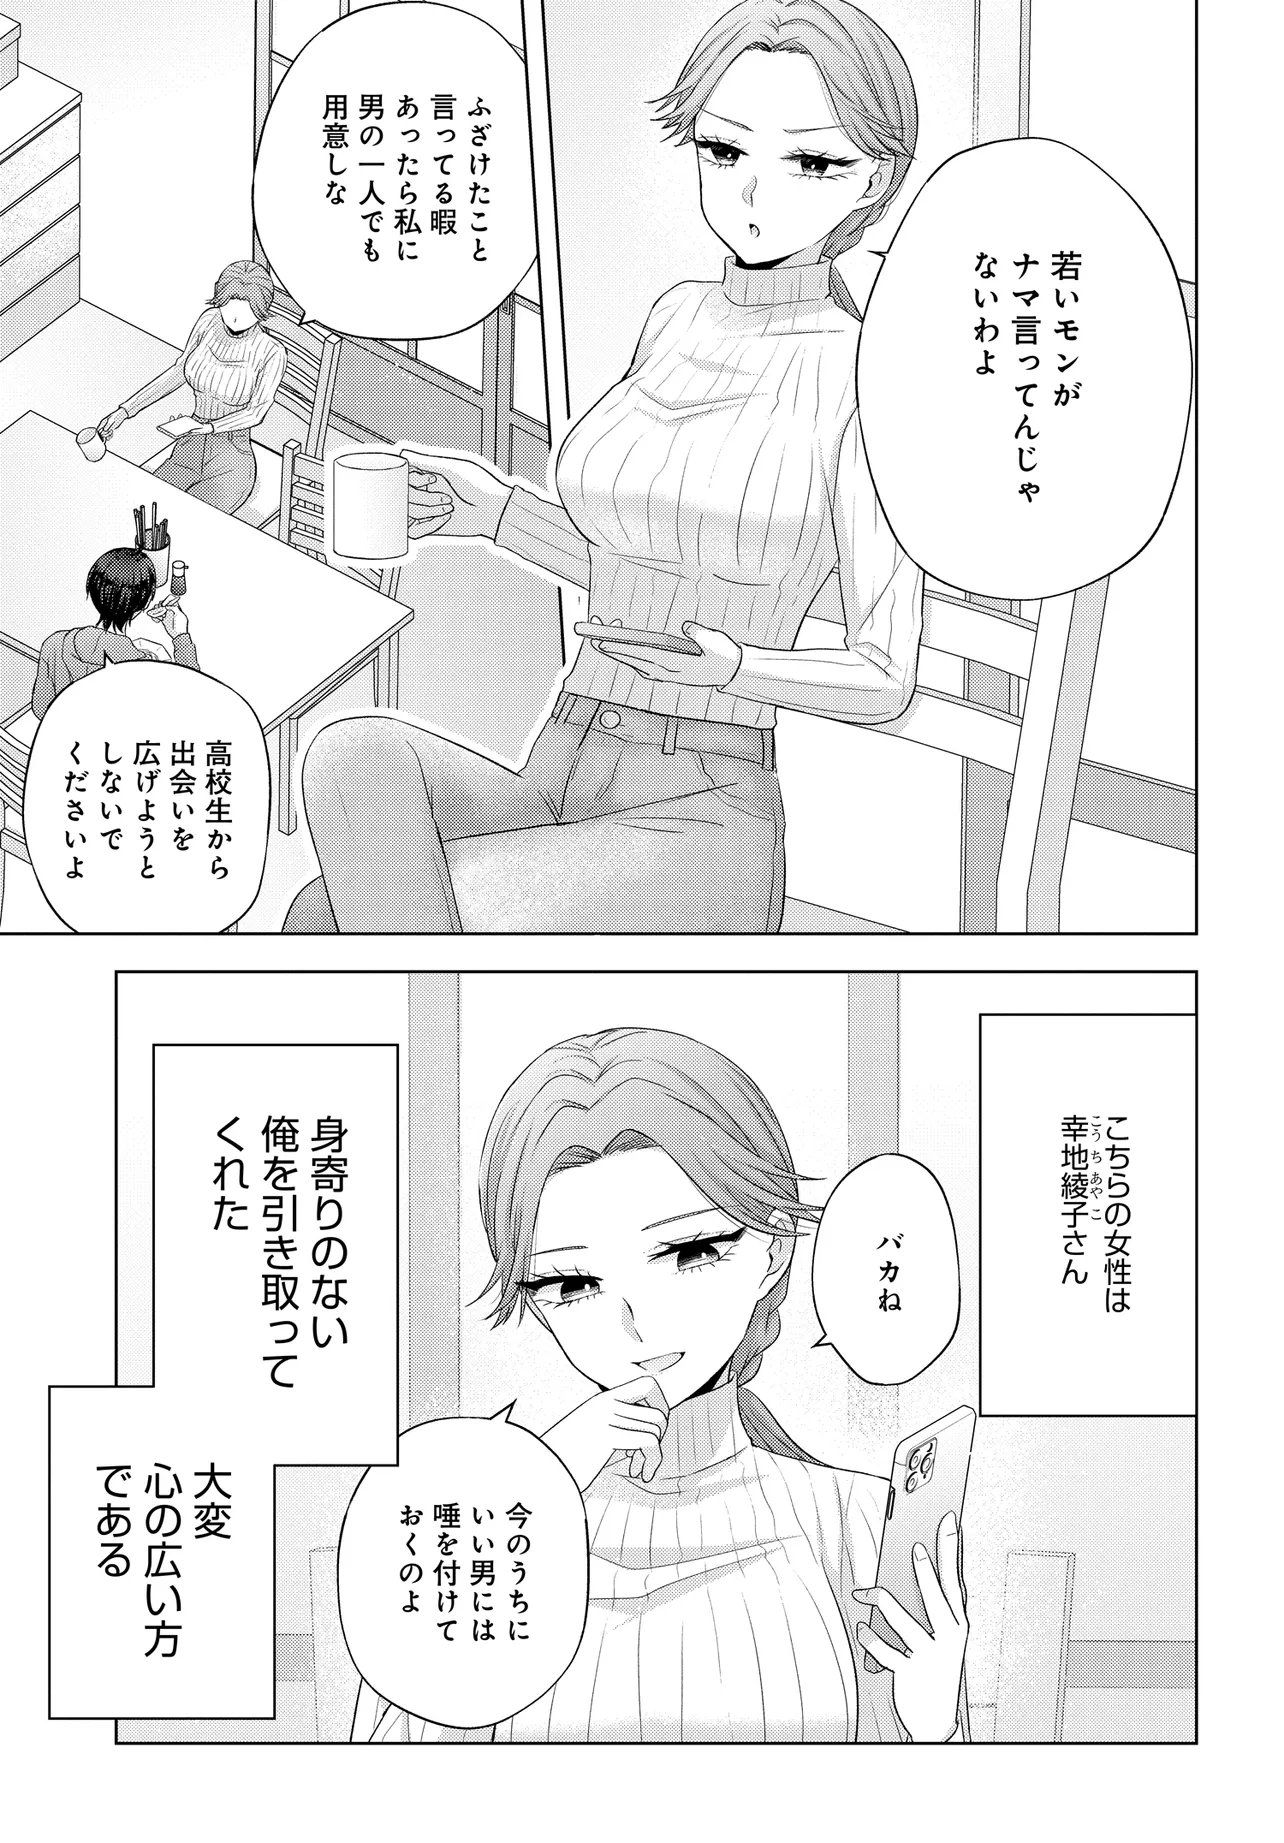 Suufun Go no Mirai ga Wakaru you ni Natta kedo, Onnagokoro wa Wakaranai. - Chapter 1 - Page 15